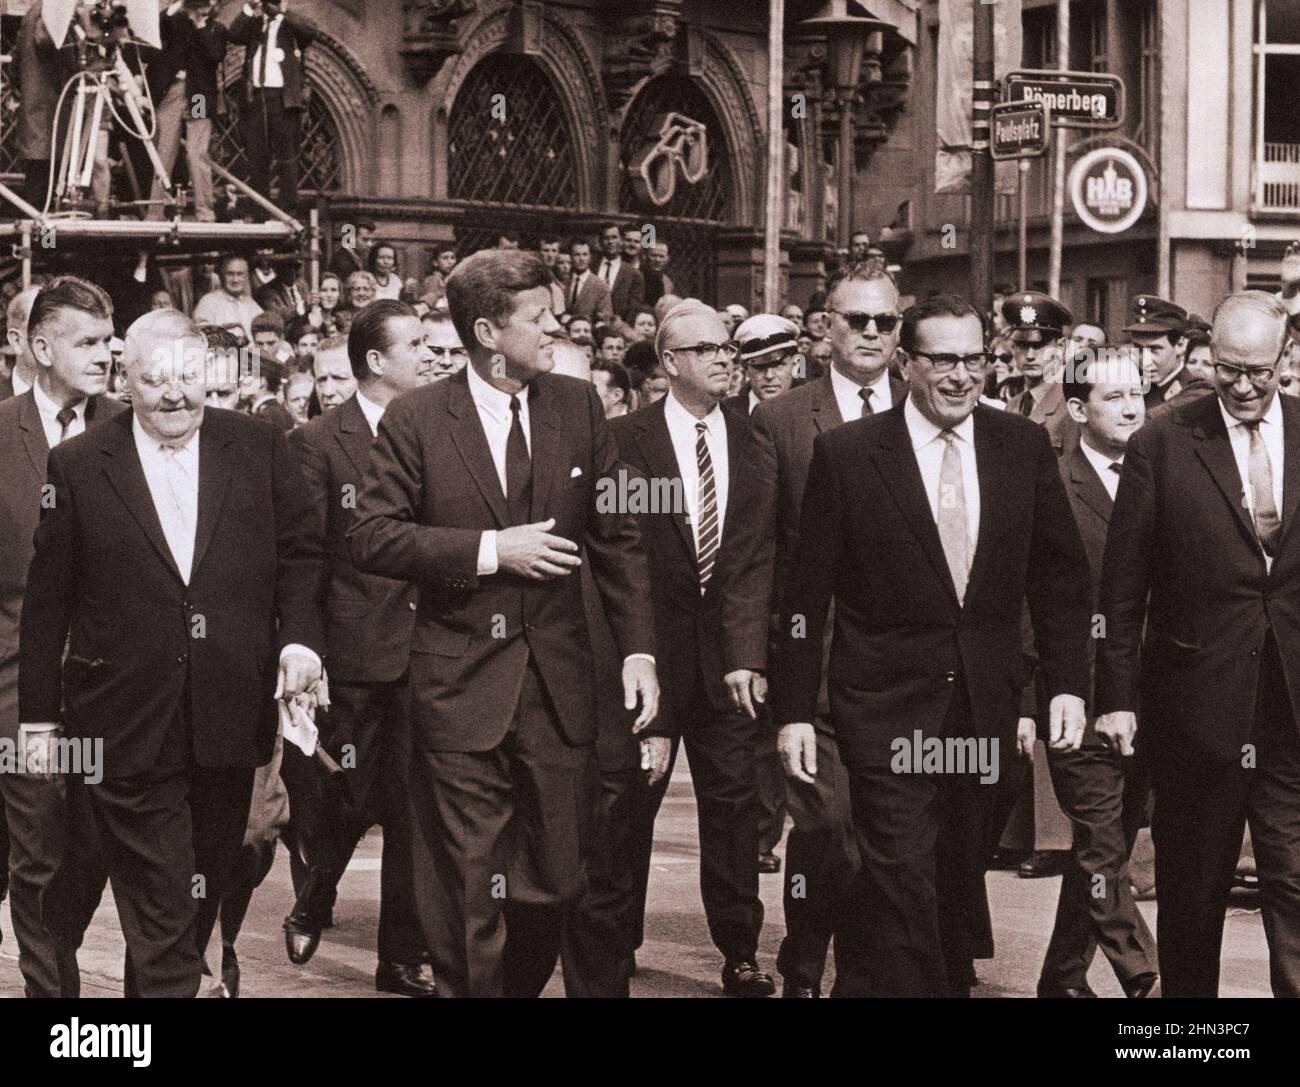 Vintage-Foto der Berliner Krise von 1961: Mauerbau. Der Präsident geht von der historischen Frankfurter Paulskirche mit führenden deutschen Beamten zu Fuß. Auf dem Stockfoto